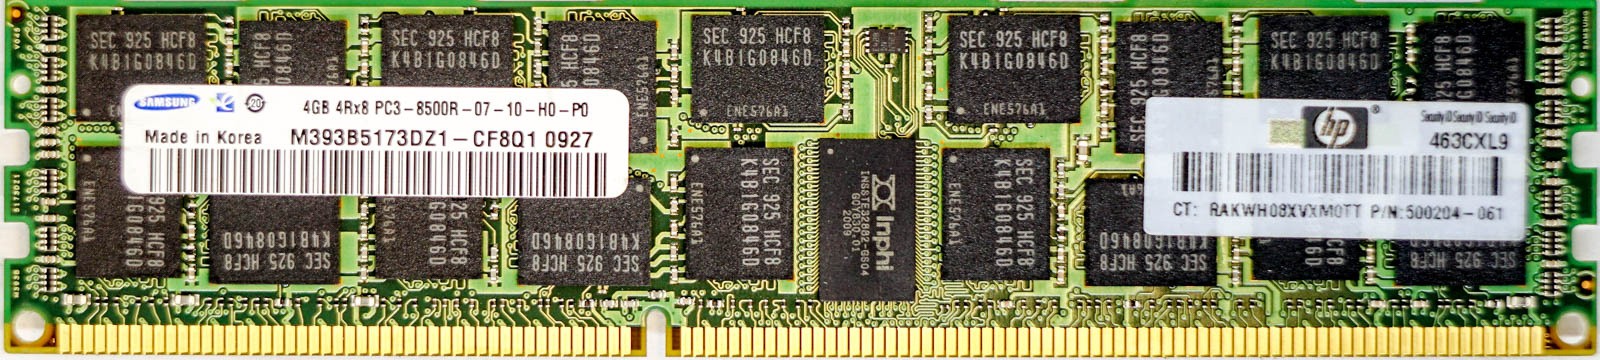 HP (500204-061) - 4GB PC3-8500R (DDR3-1066Mhz, 4RX8)